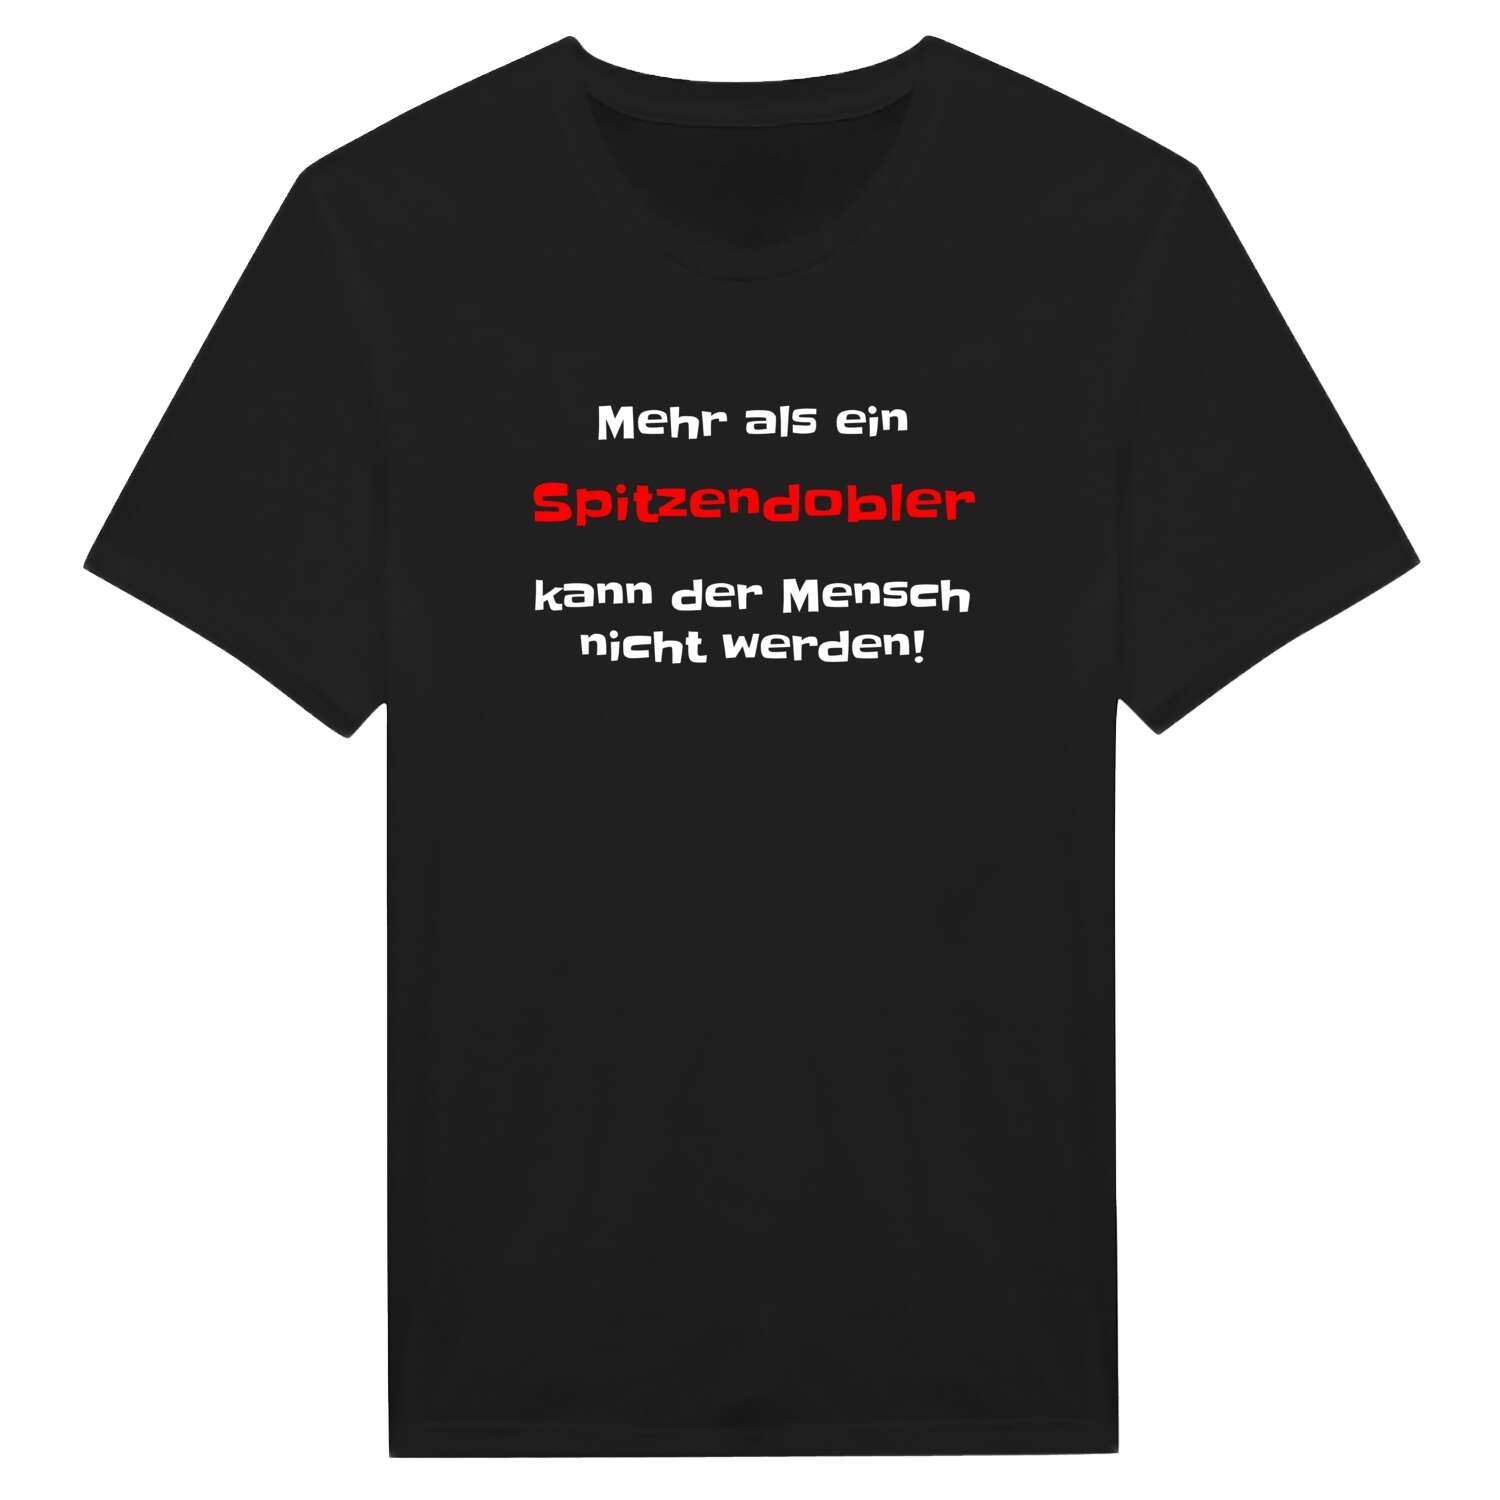 Spitzendobl T-Shirt »Mehr als ein«